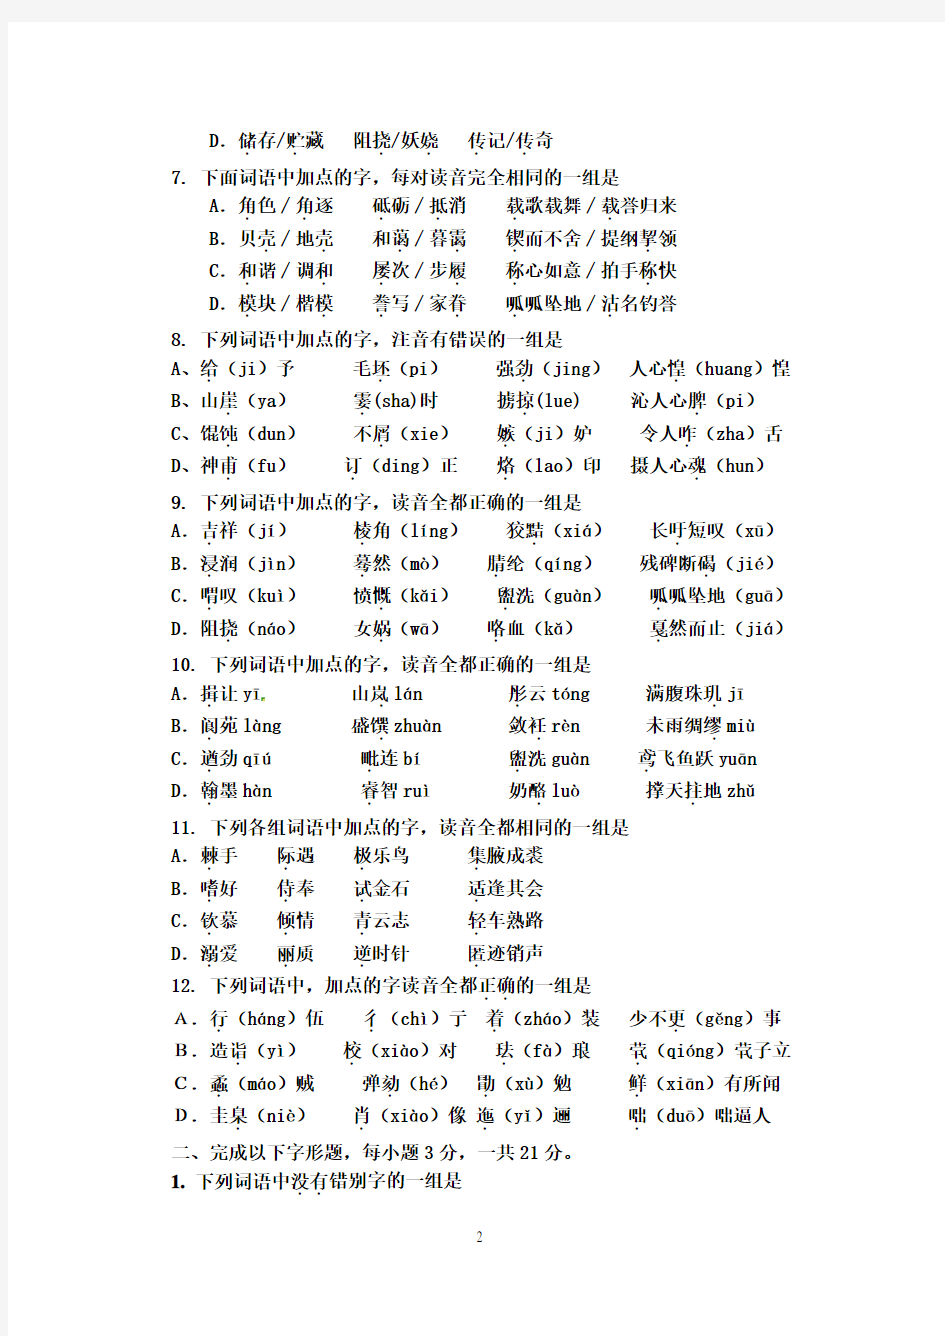 2011年语文高考字音字形(练习题形式)及答案